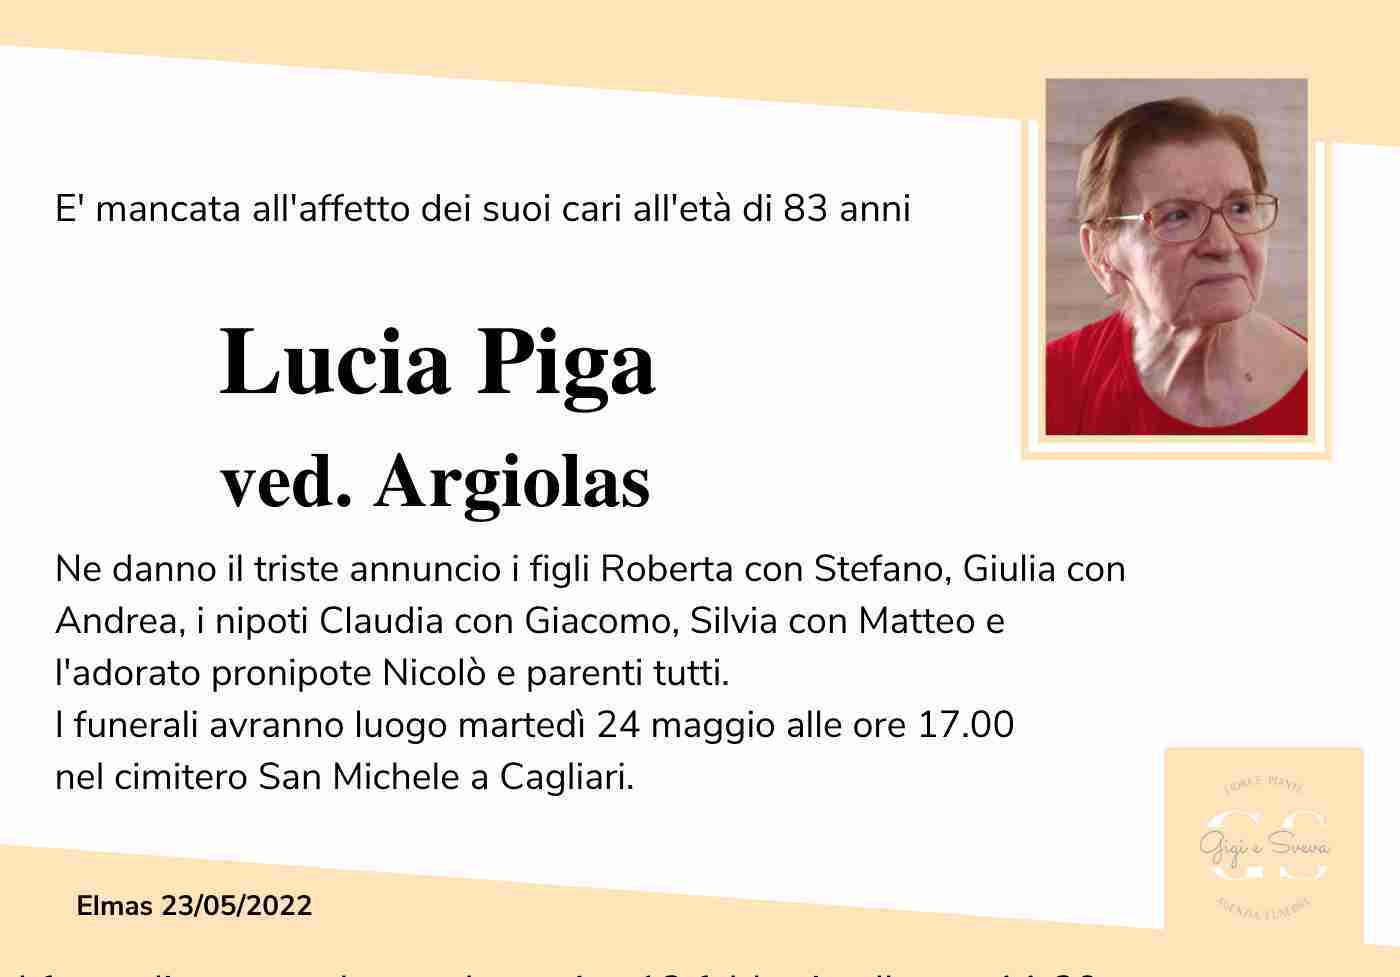 Lucia Piga